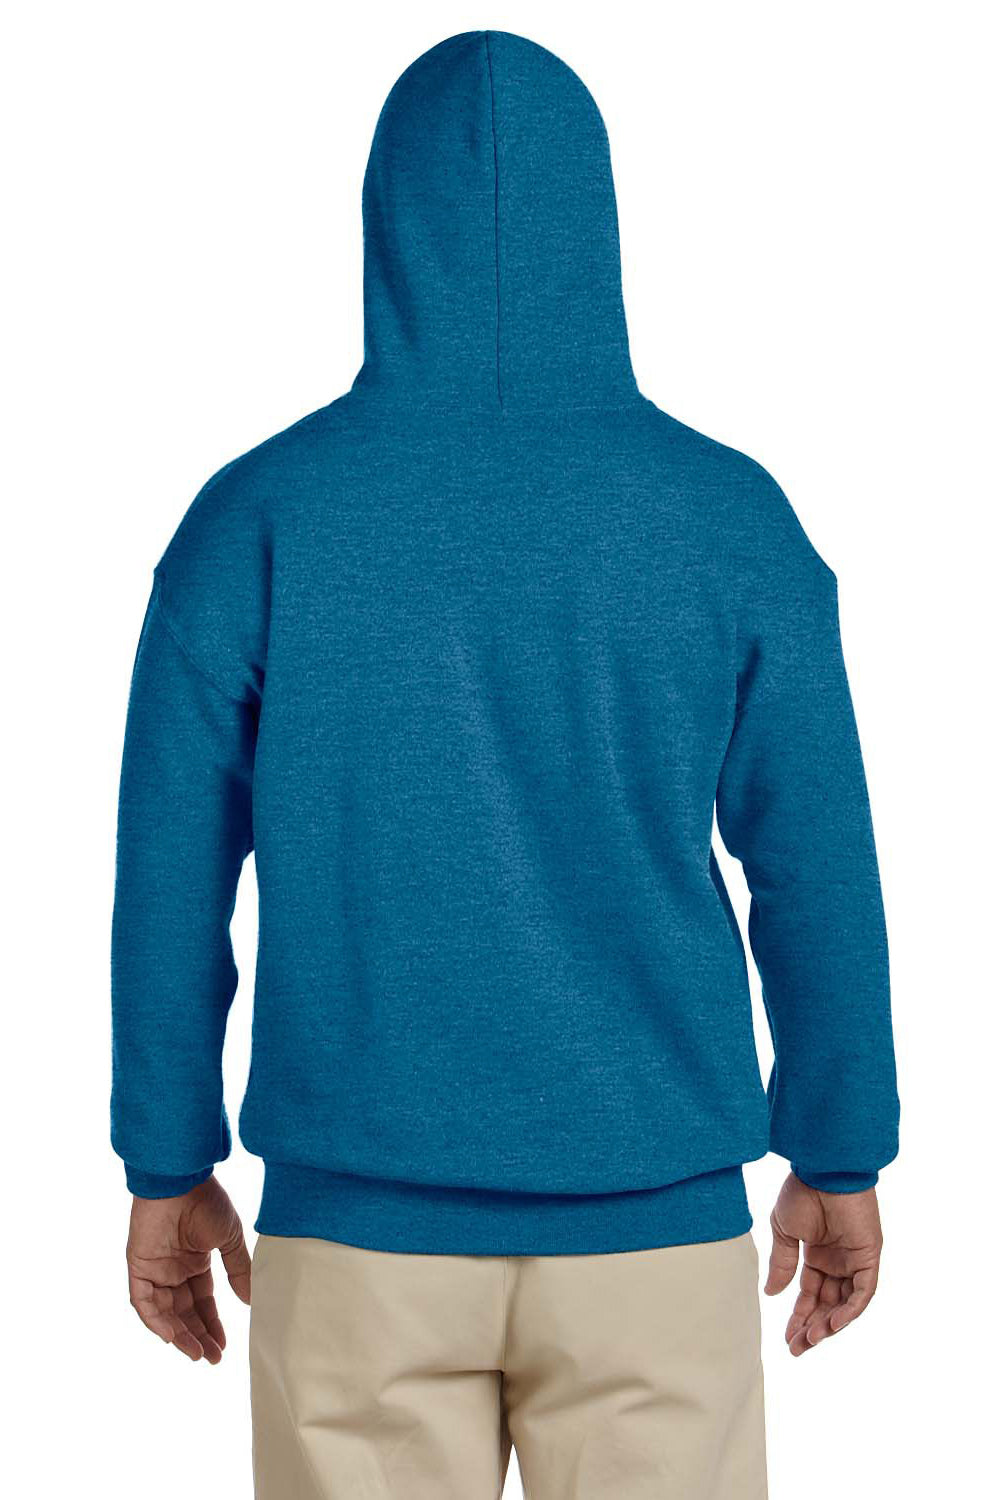 Gildan G185 Mens Hooded Sweatshirt Hoodie Antique Sapphire Blue Back